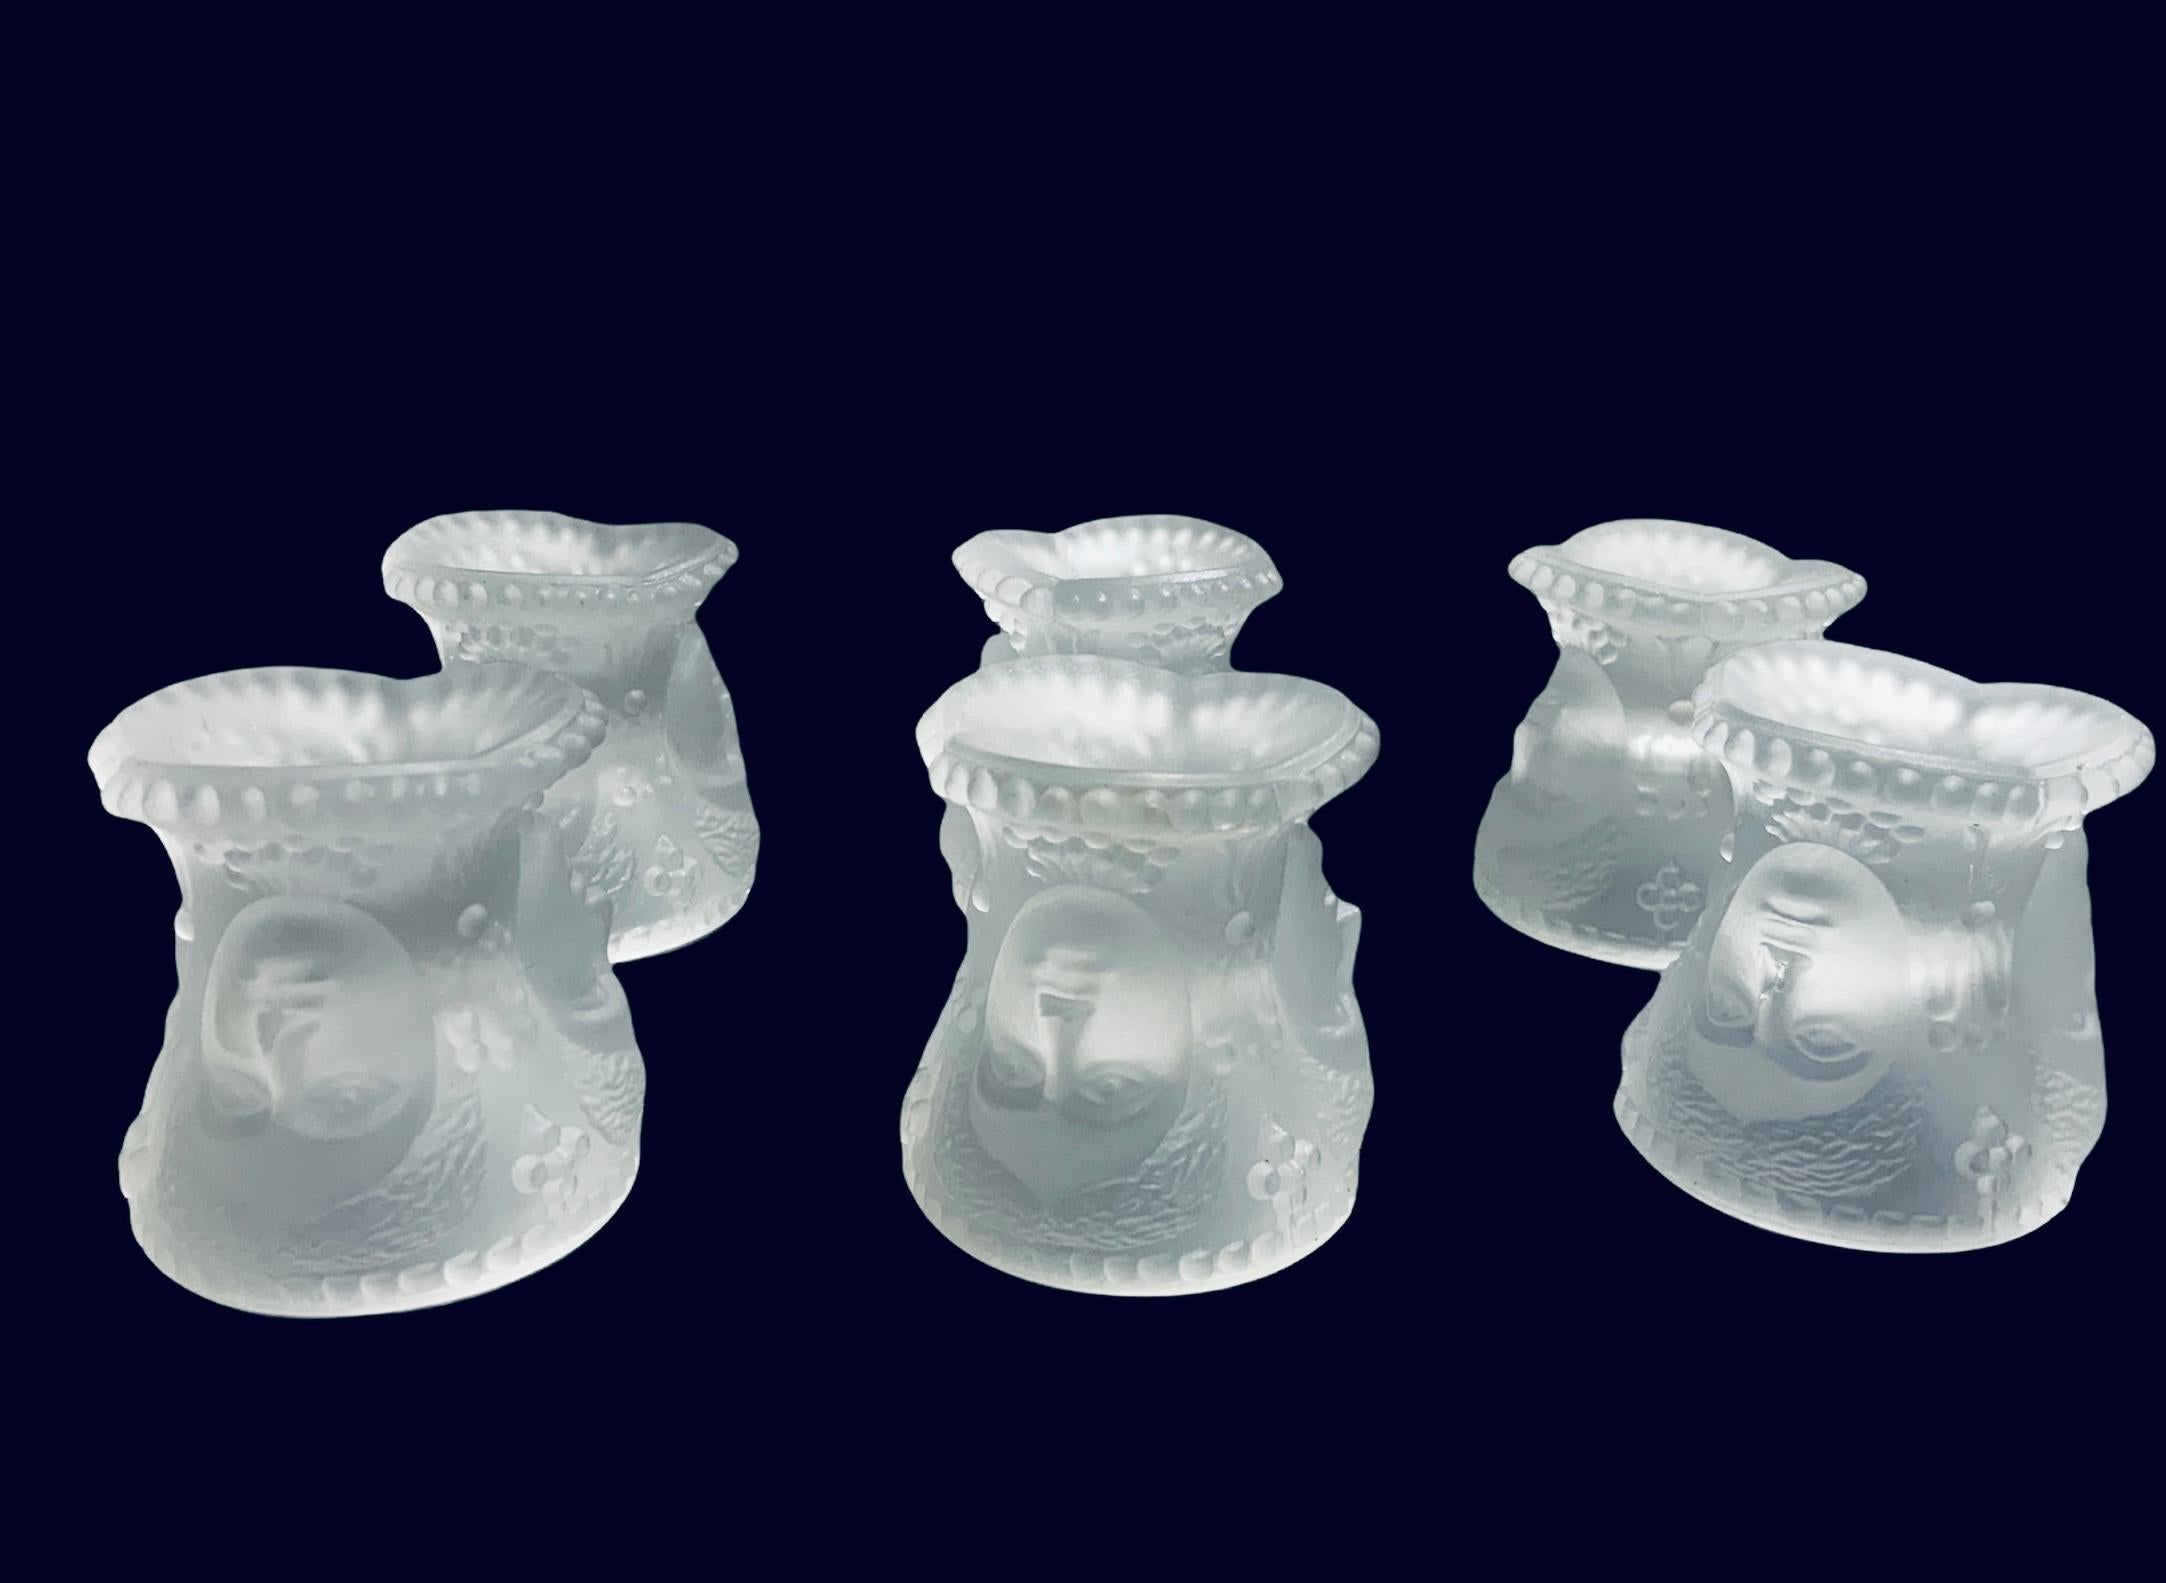 Dies ist ein L.G. Wright Glass Co. Set aus sechs Salzstreuern aus Milchglas mit drei Gesichtern. Sie zeigen dreimal dasselbe Gesicht einer Frau/Göttin, deren Kopf mit vielen gewellten Haaren und Blumen auf jeder Seite geschmückt ist. Es scheint